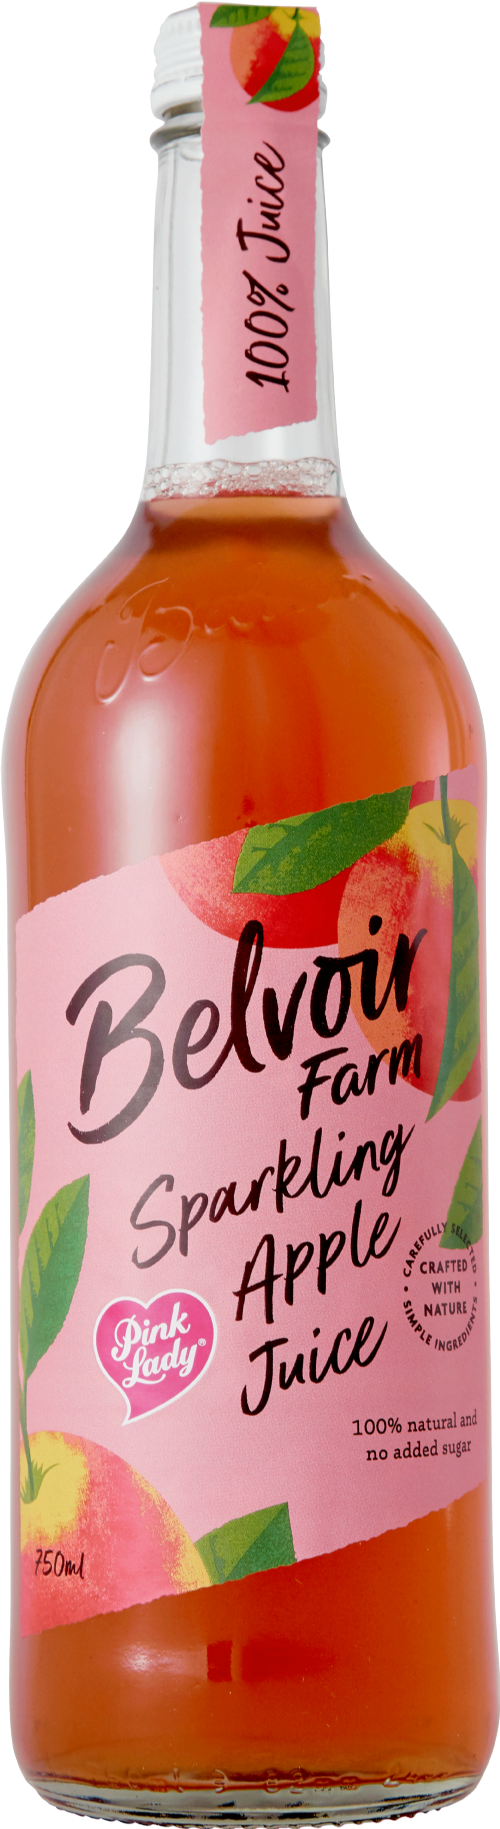 BELVOIR Sparkling Pink Lady Apple Juice 75cl